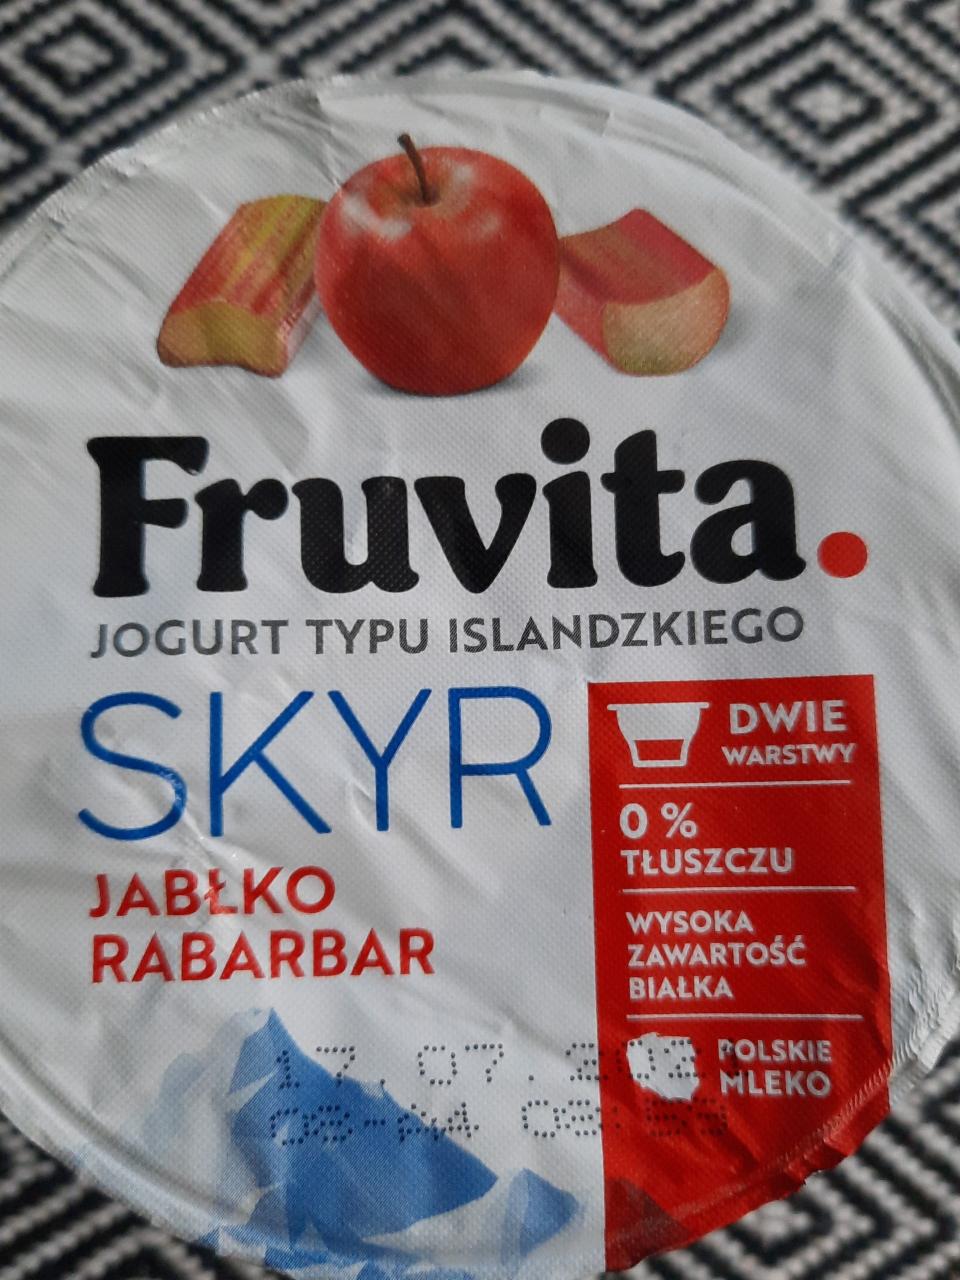 Zdjęcia - Fruvita jogurt typu islandzkiego skyr jabłko rabarbar